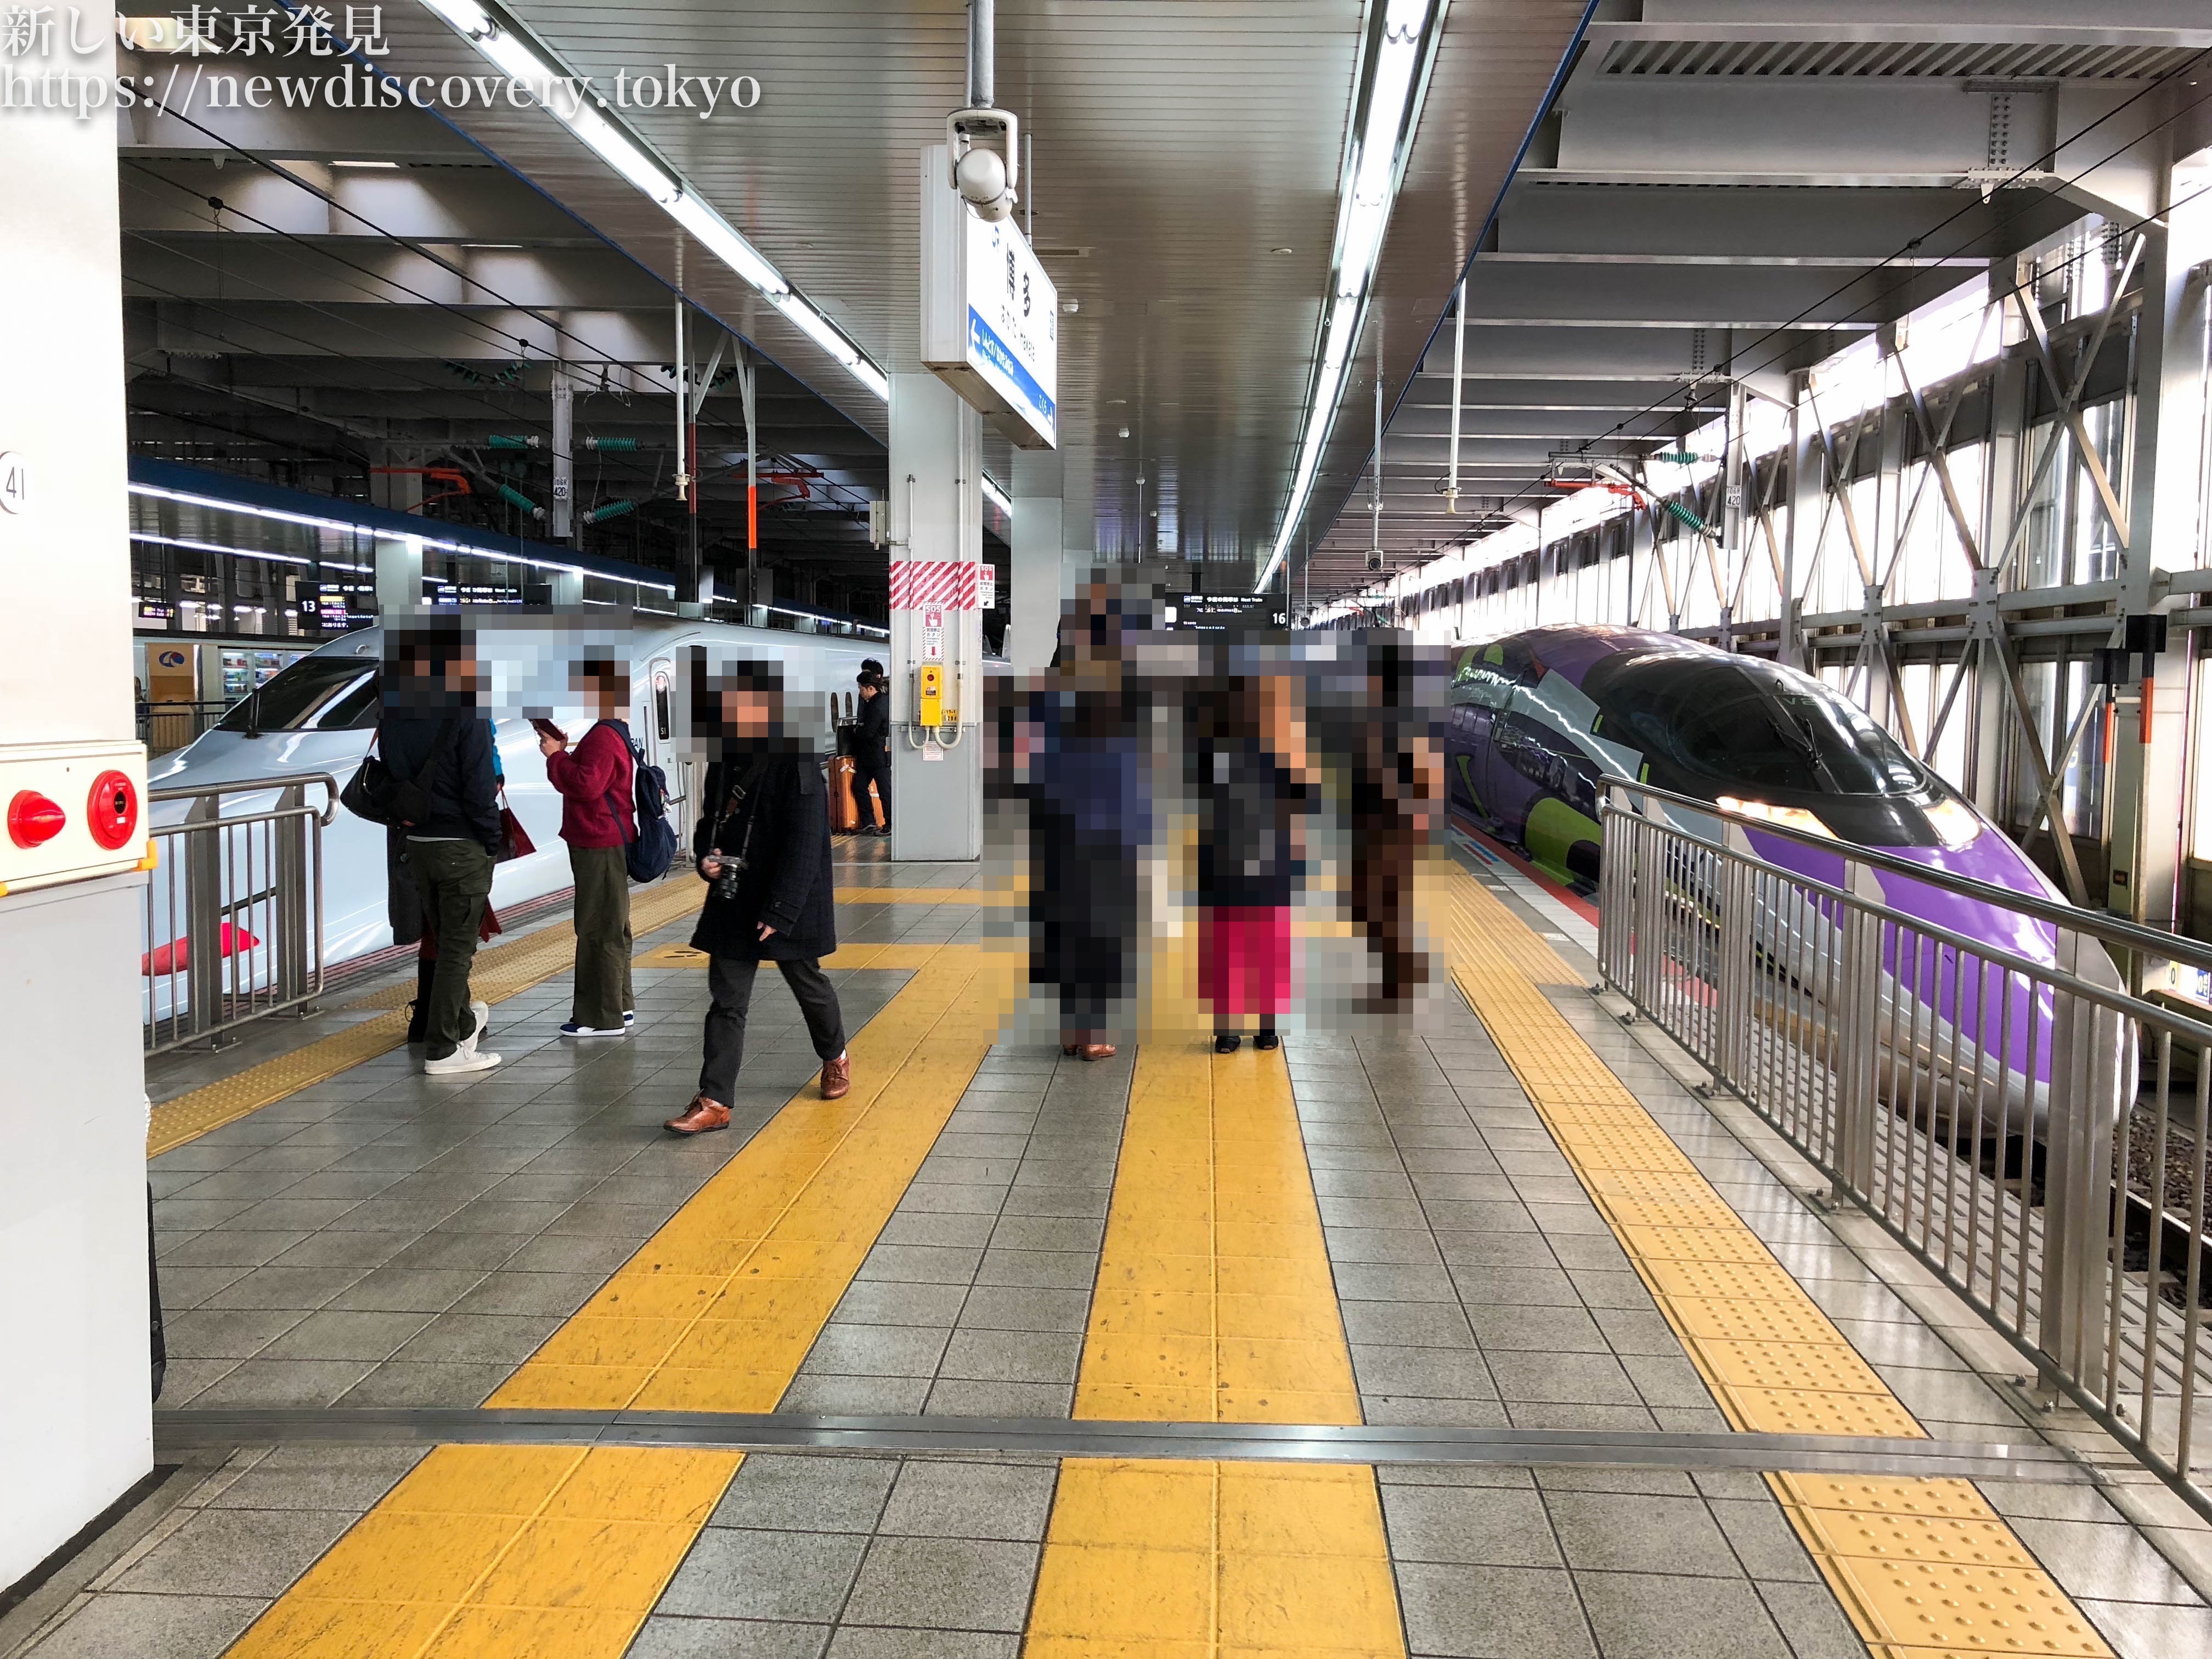 福岡市 博多駅周辺 で 電車好きな子供を連れて行くべき子鉄スポット トレインビュー 7選をご紹介 子連れパパママを応援する情報チャンネル 新しい東京 発見